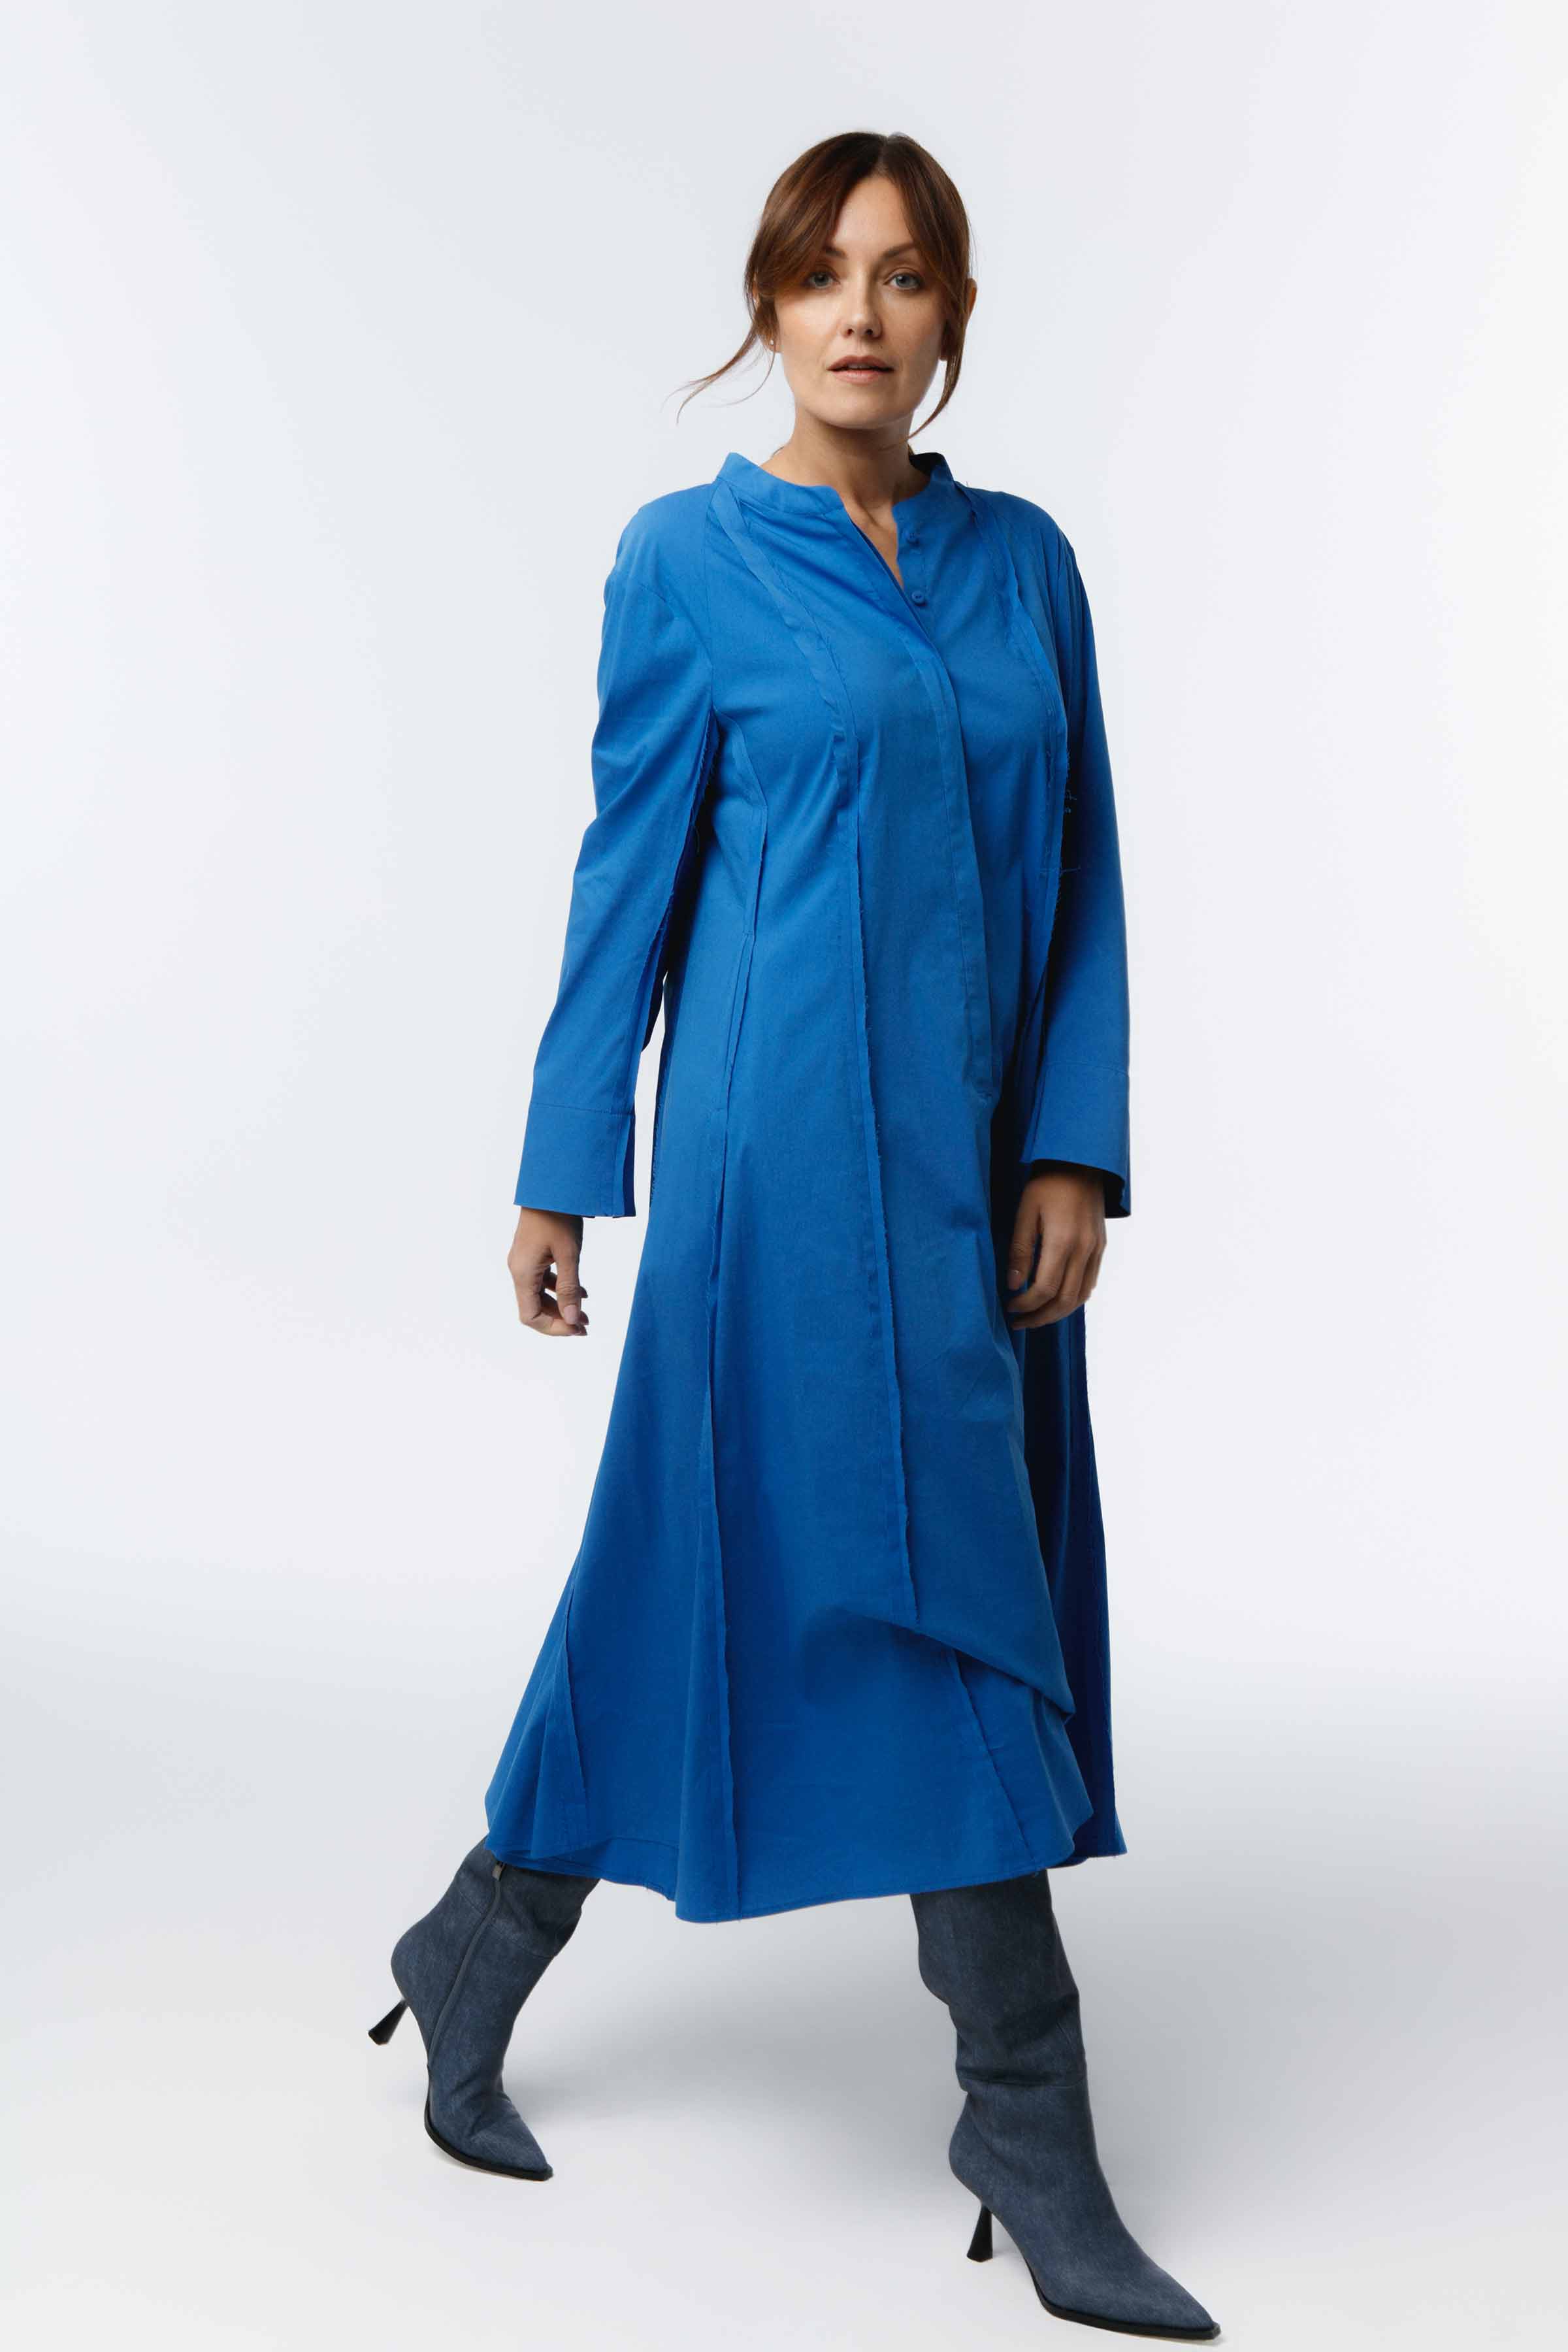 Платье Хлопок гранж 35 Синий (bleu) от Lesel (Лесель)! Заказывайте по ✆ 8 (800) 777 02 37